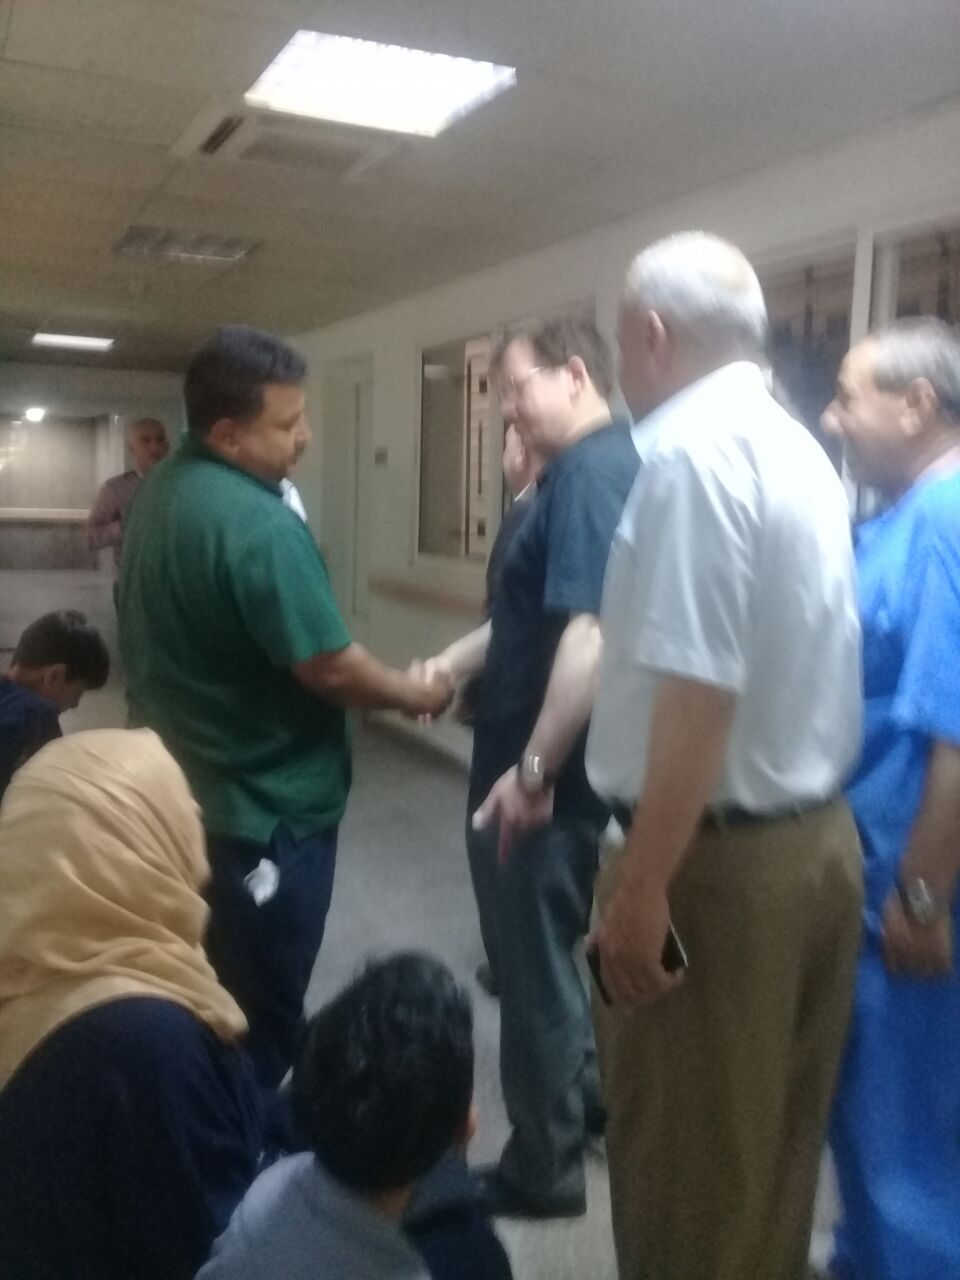 وزير الصحة يزور مستشفى جرش الحكومي بشكل مفاجئ